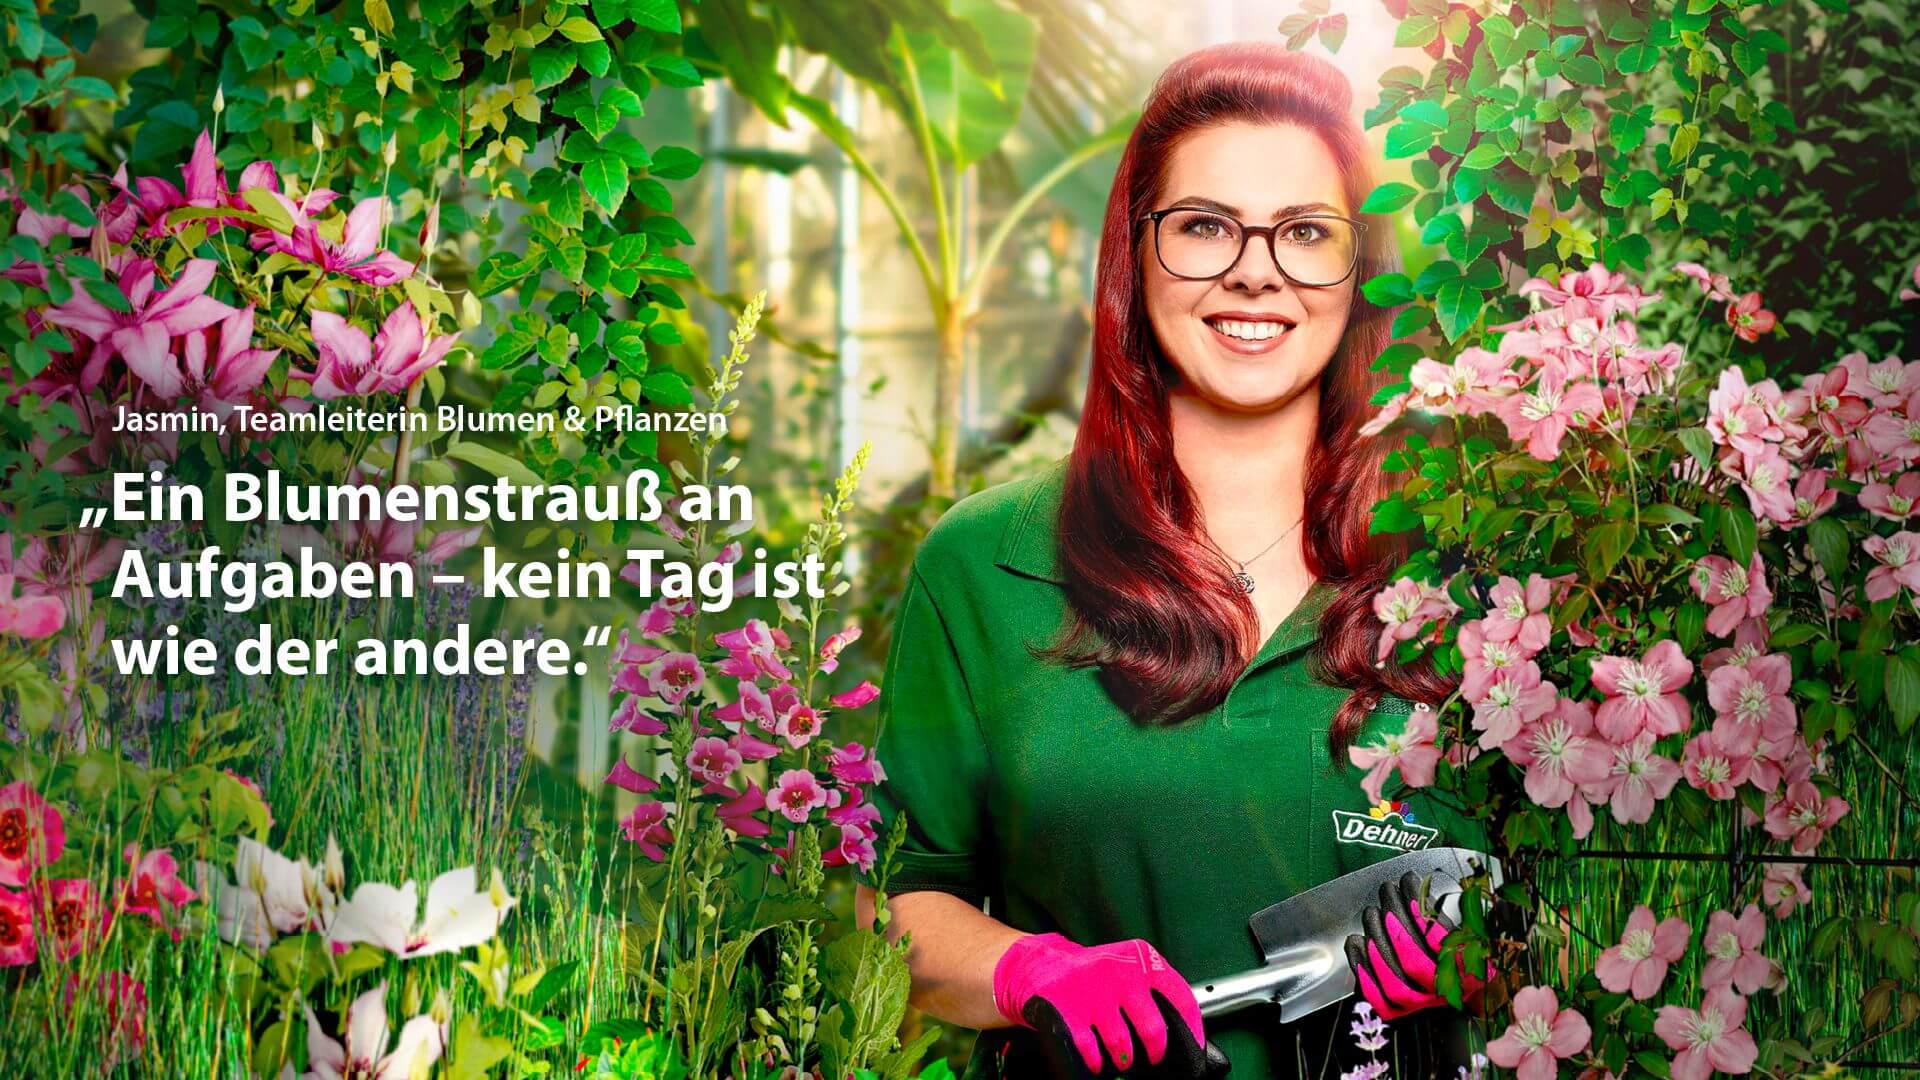 Keyvisual von Dehner, eine Mitarbeiterin mit Gärtnerhandschuhen im Grünen